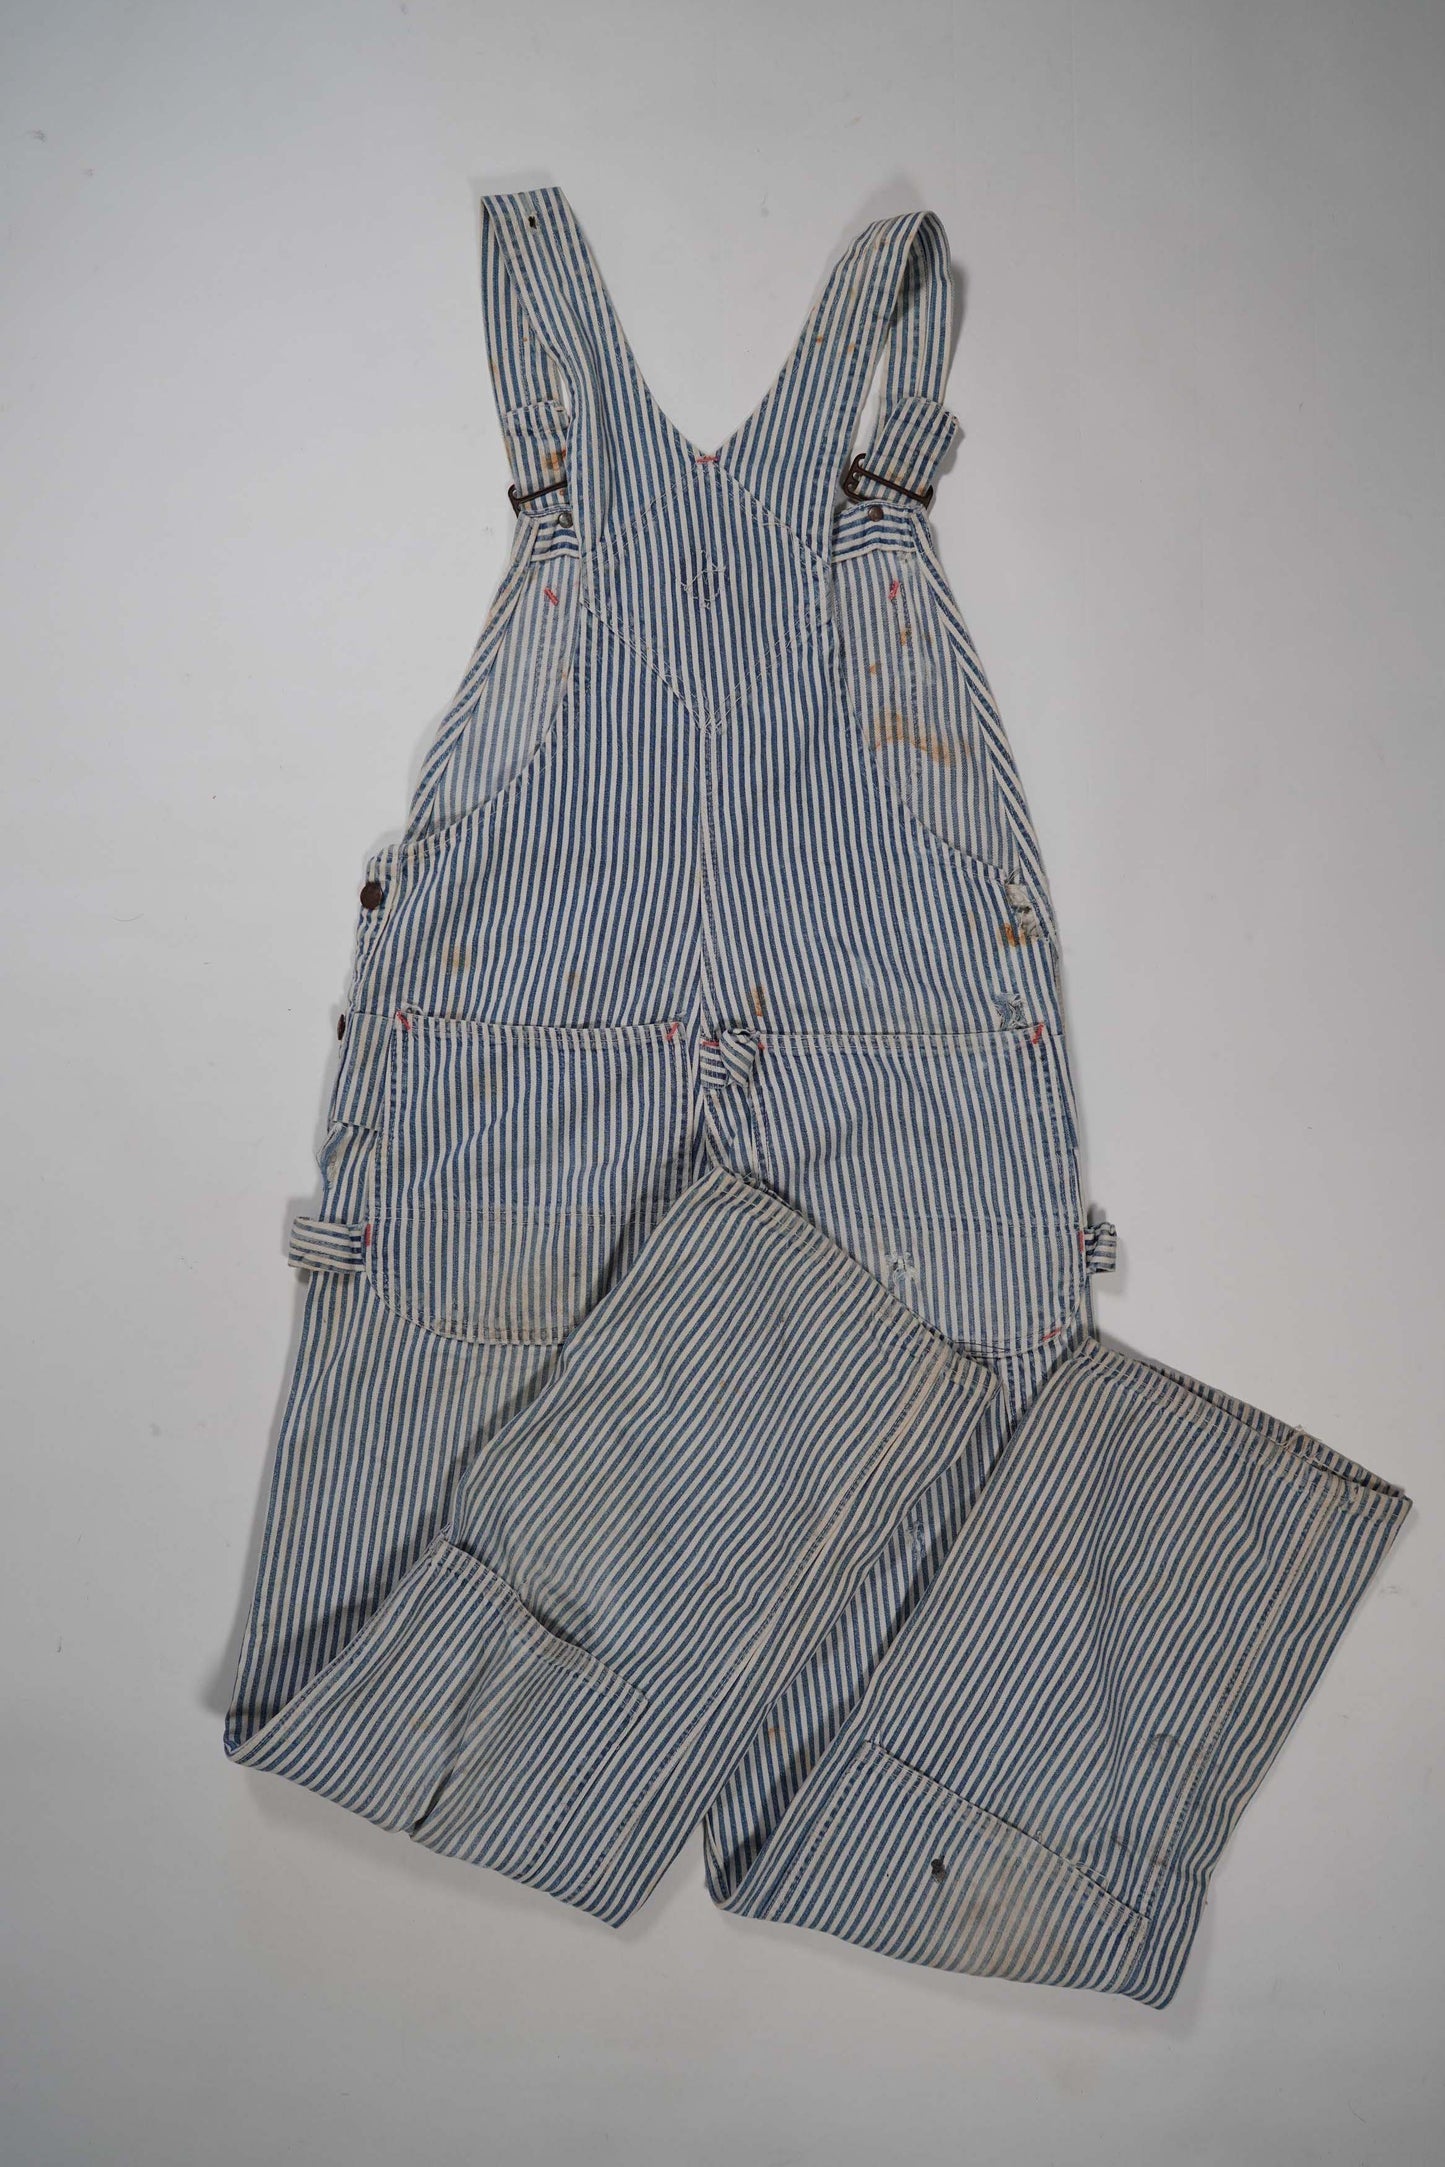 50s~「BIG MAC」Hickory overalls